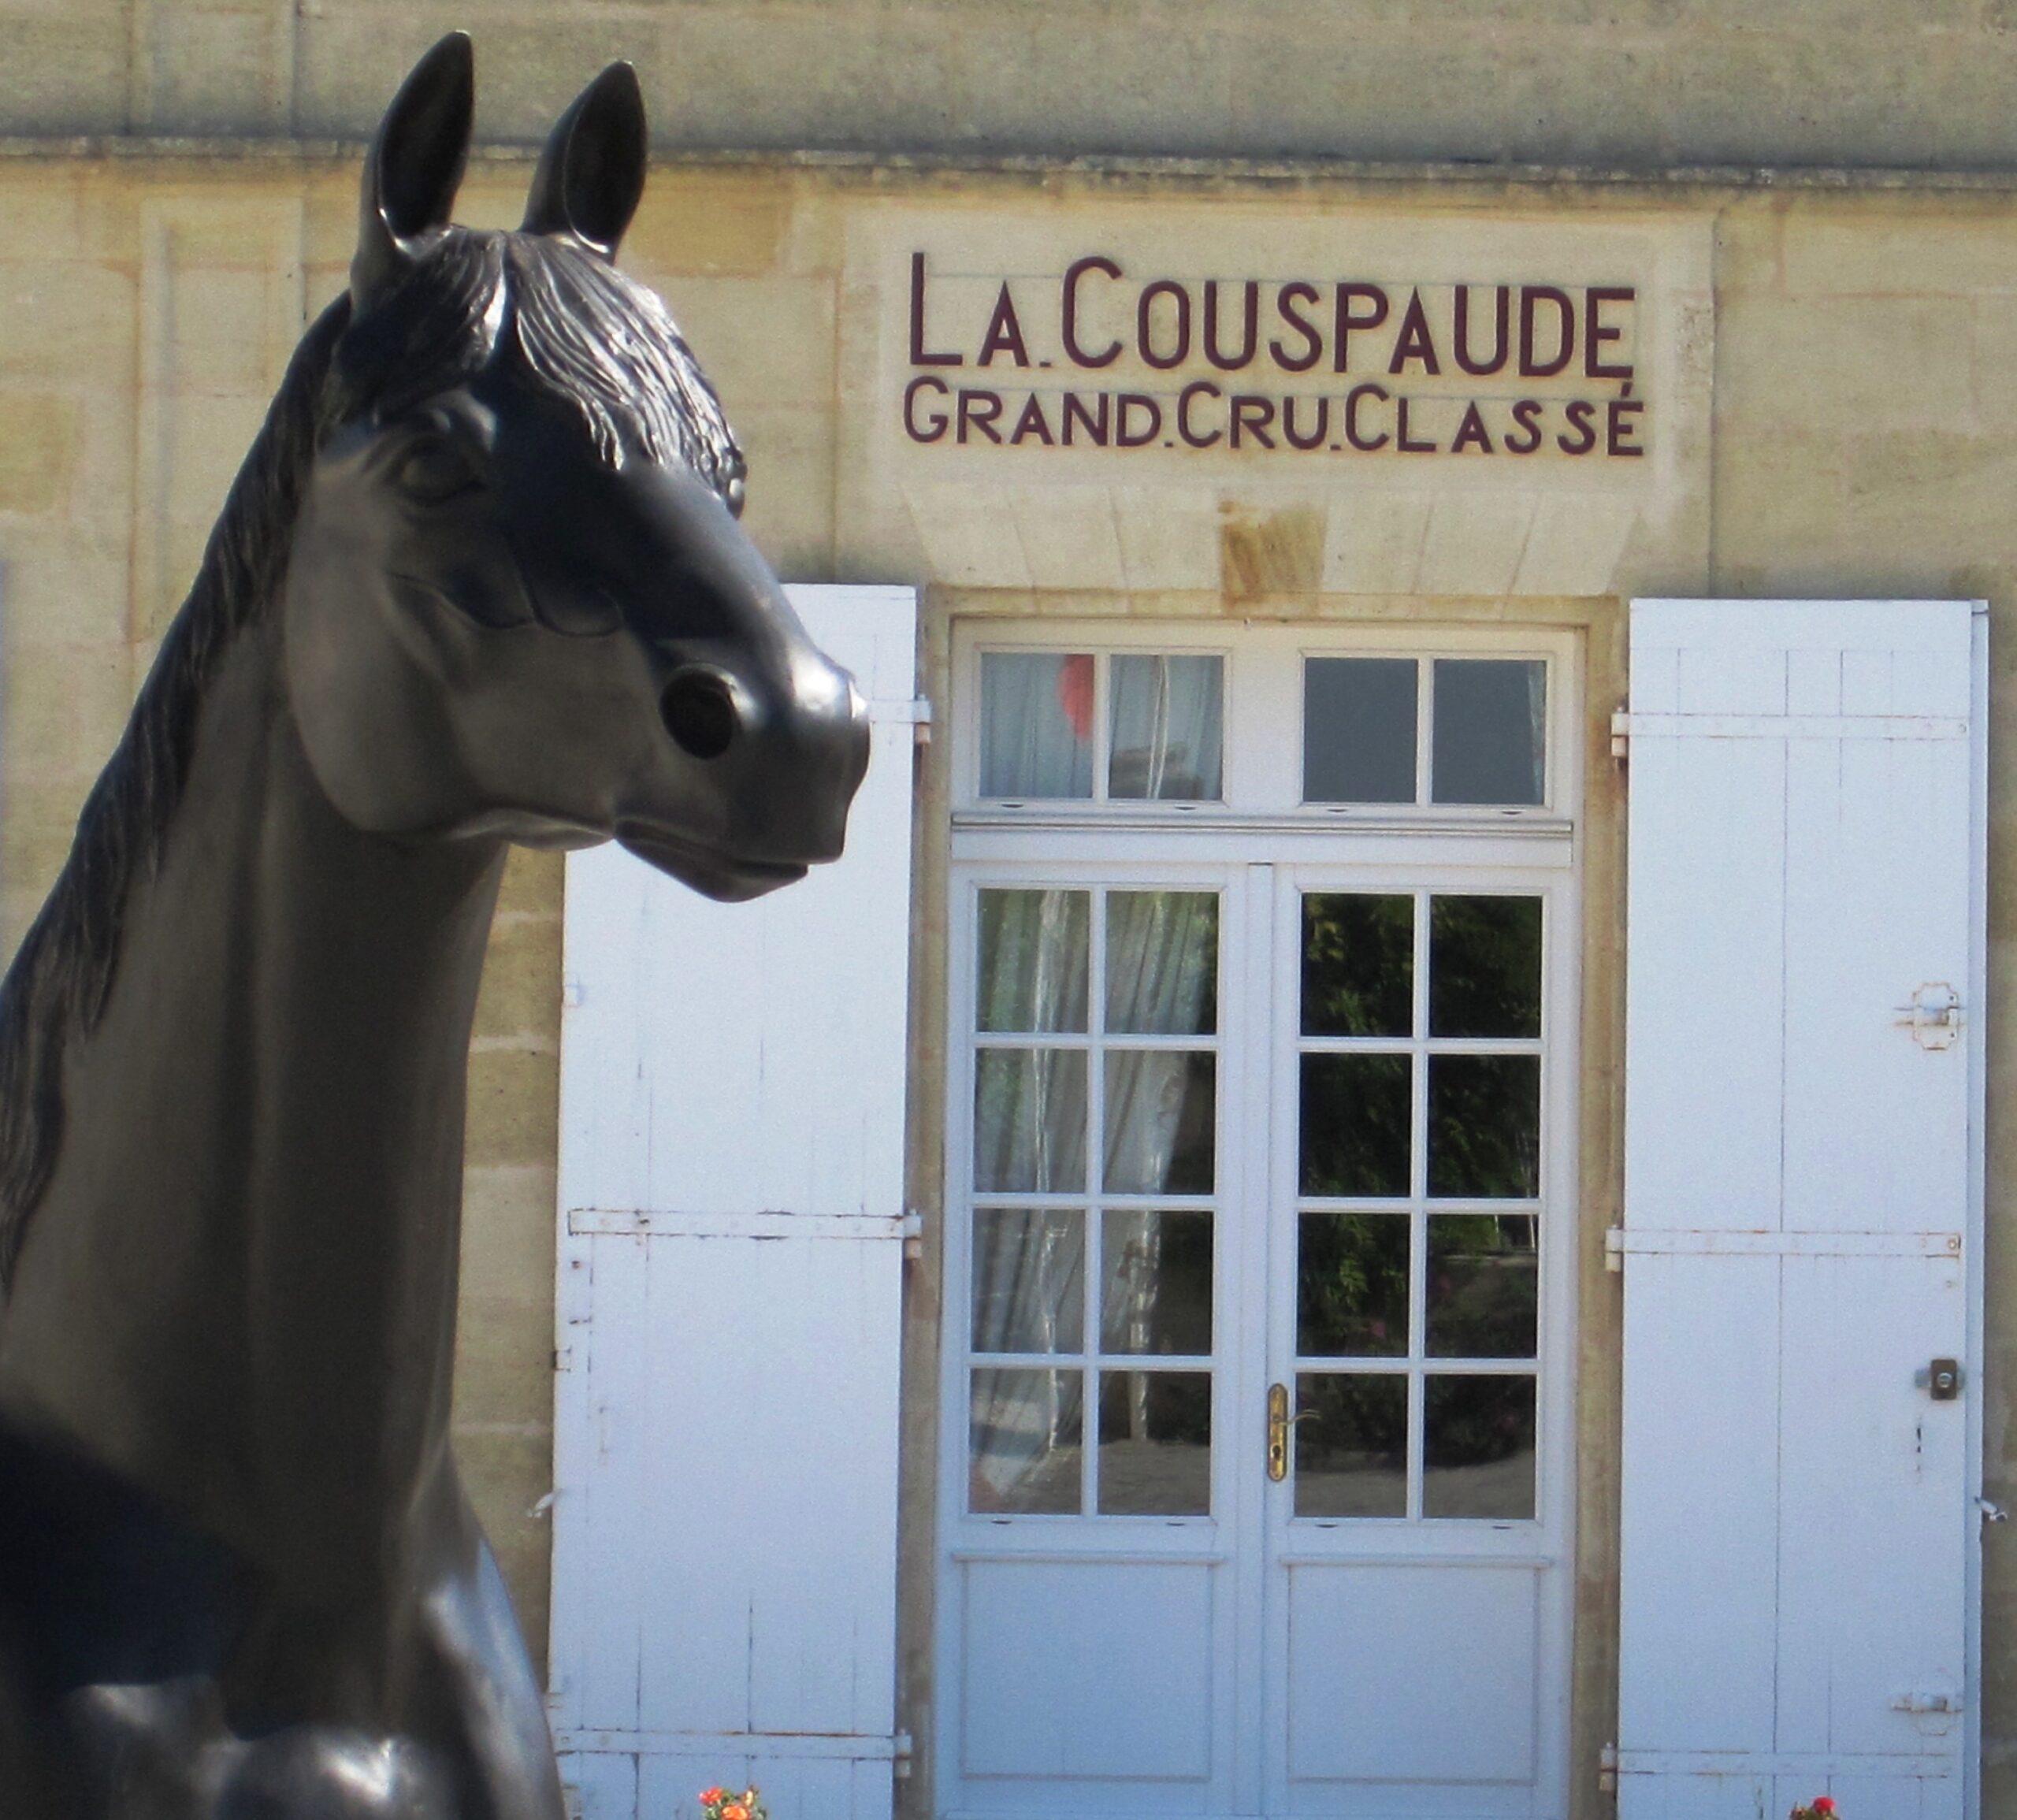 Couspaude Emilion Guide Learn about St. La Complete Wine, Chateau